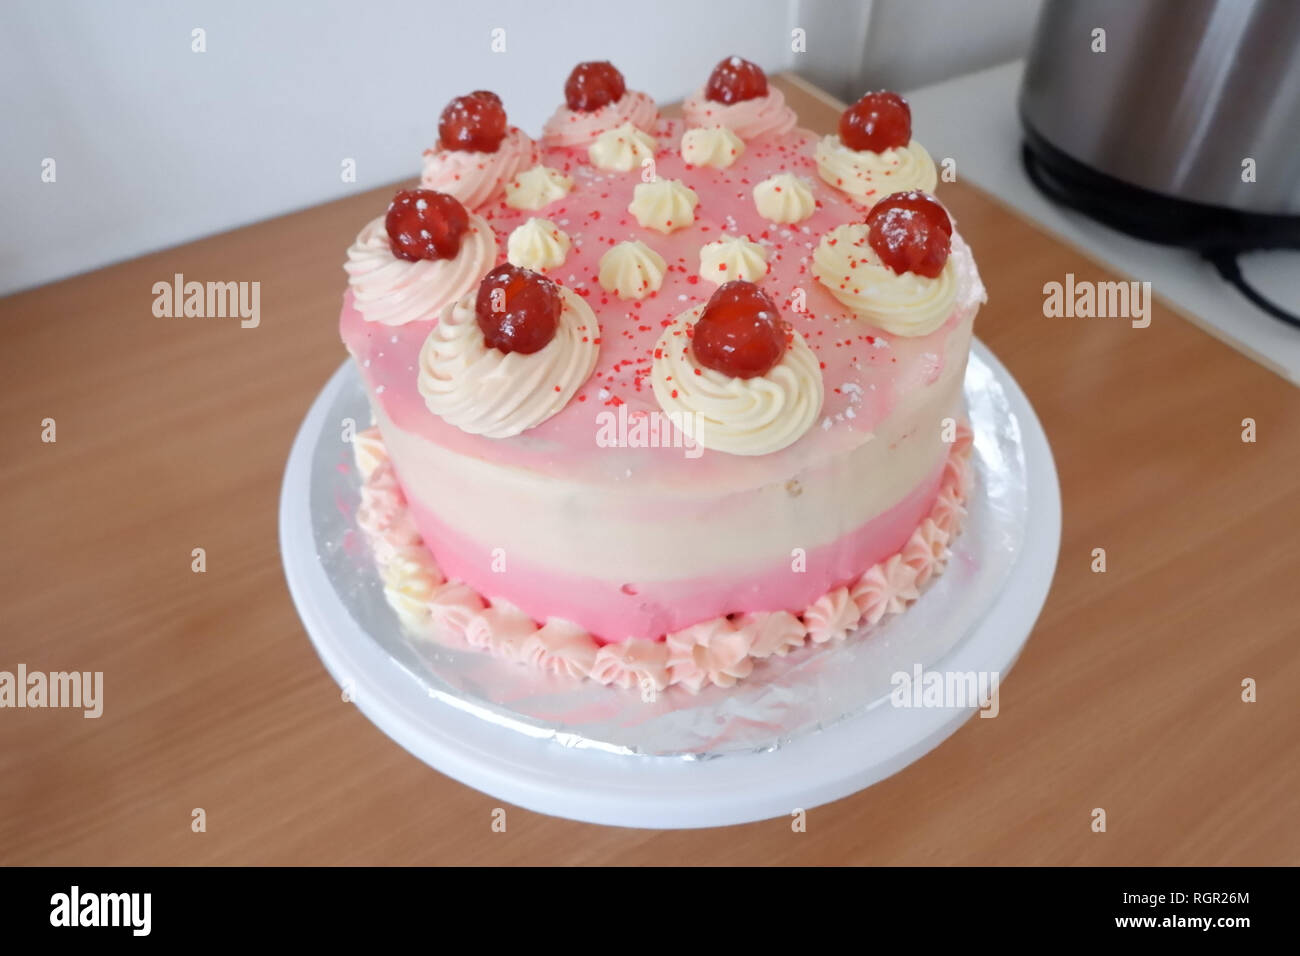 37 Pretty Cake Ideas For Your Next Celebration : Scrumptious birthday cake